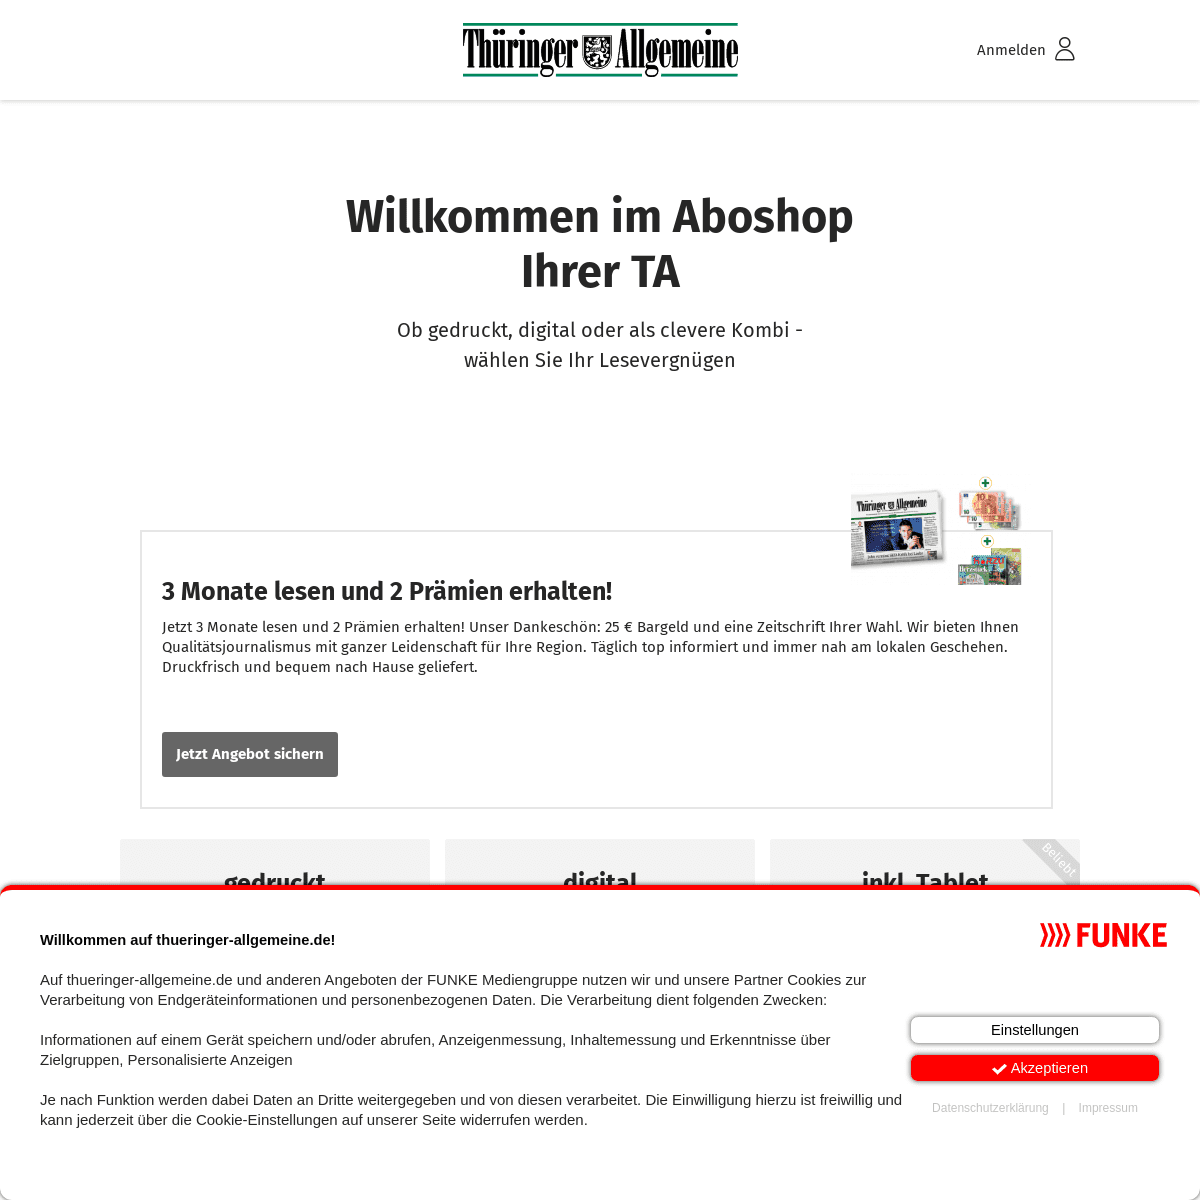 A complete backup of https://aboshop.thueringer-allgemeine.de/